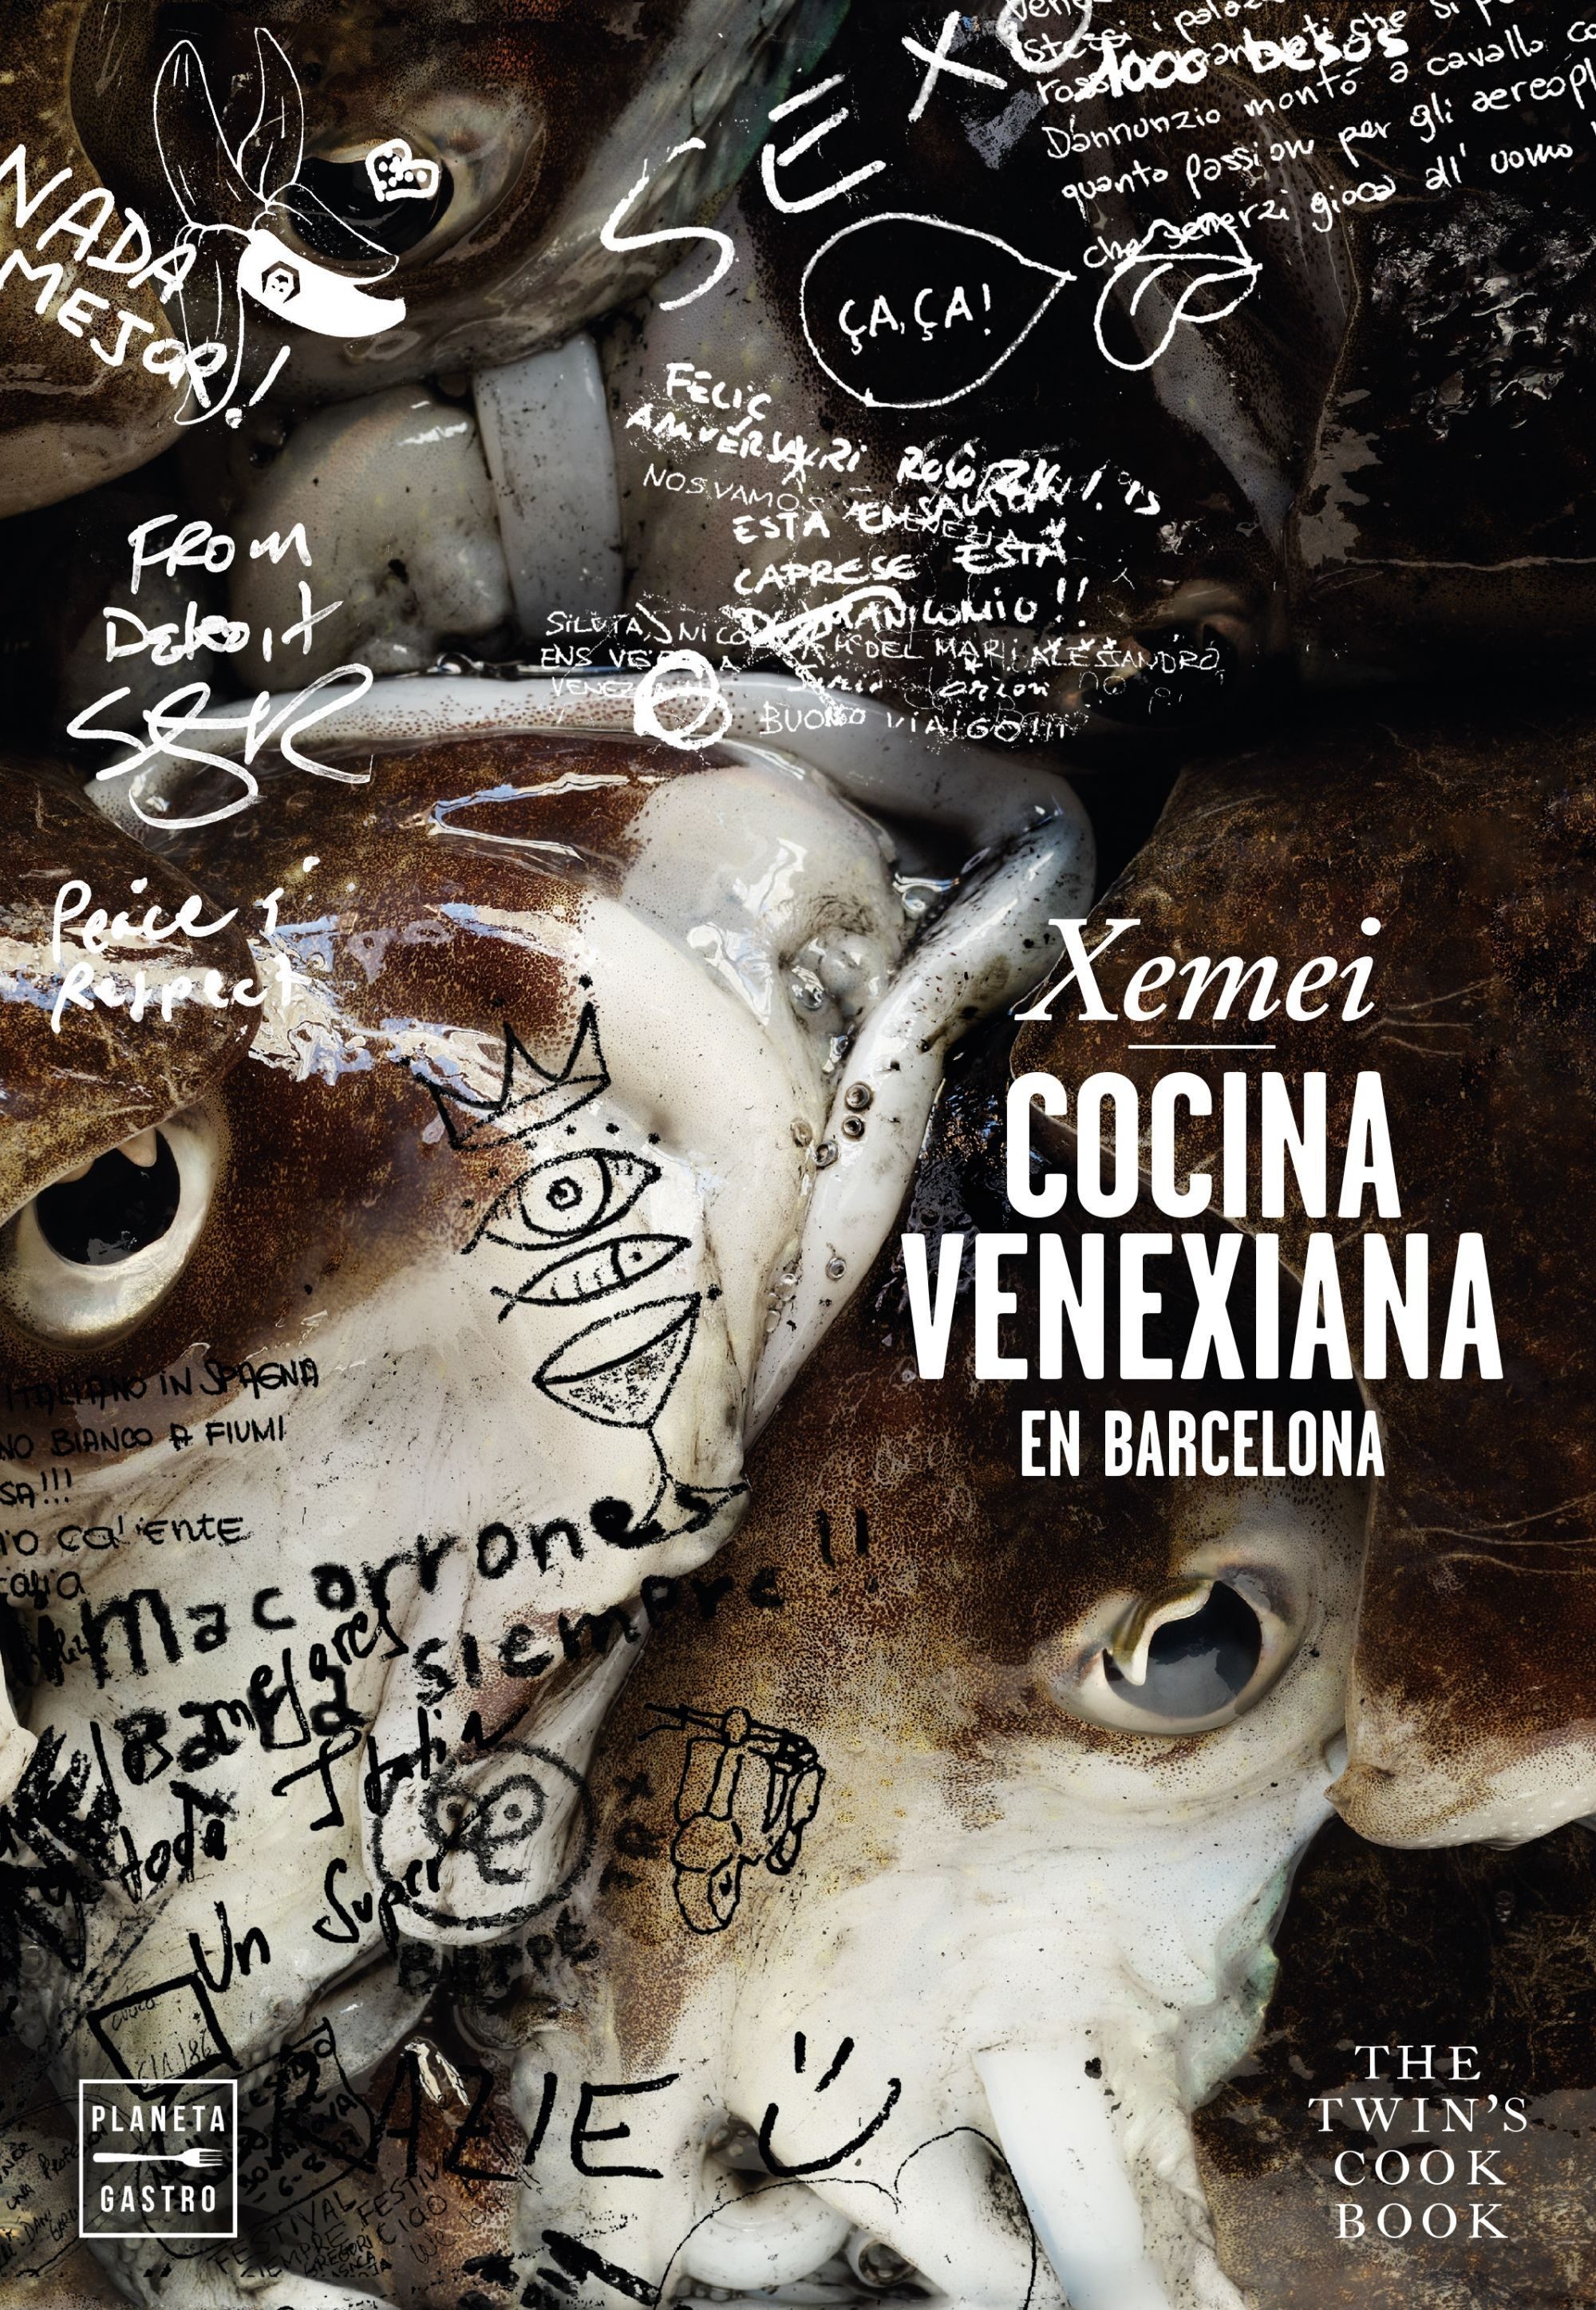 Xemei, Cocina Venexiana en Barcelona | El Aderezo | Blog ...